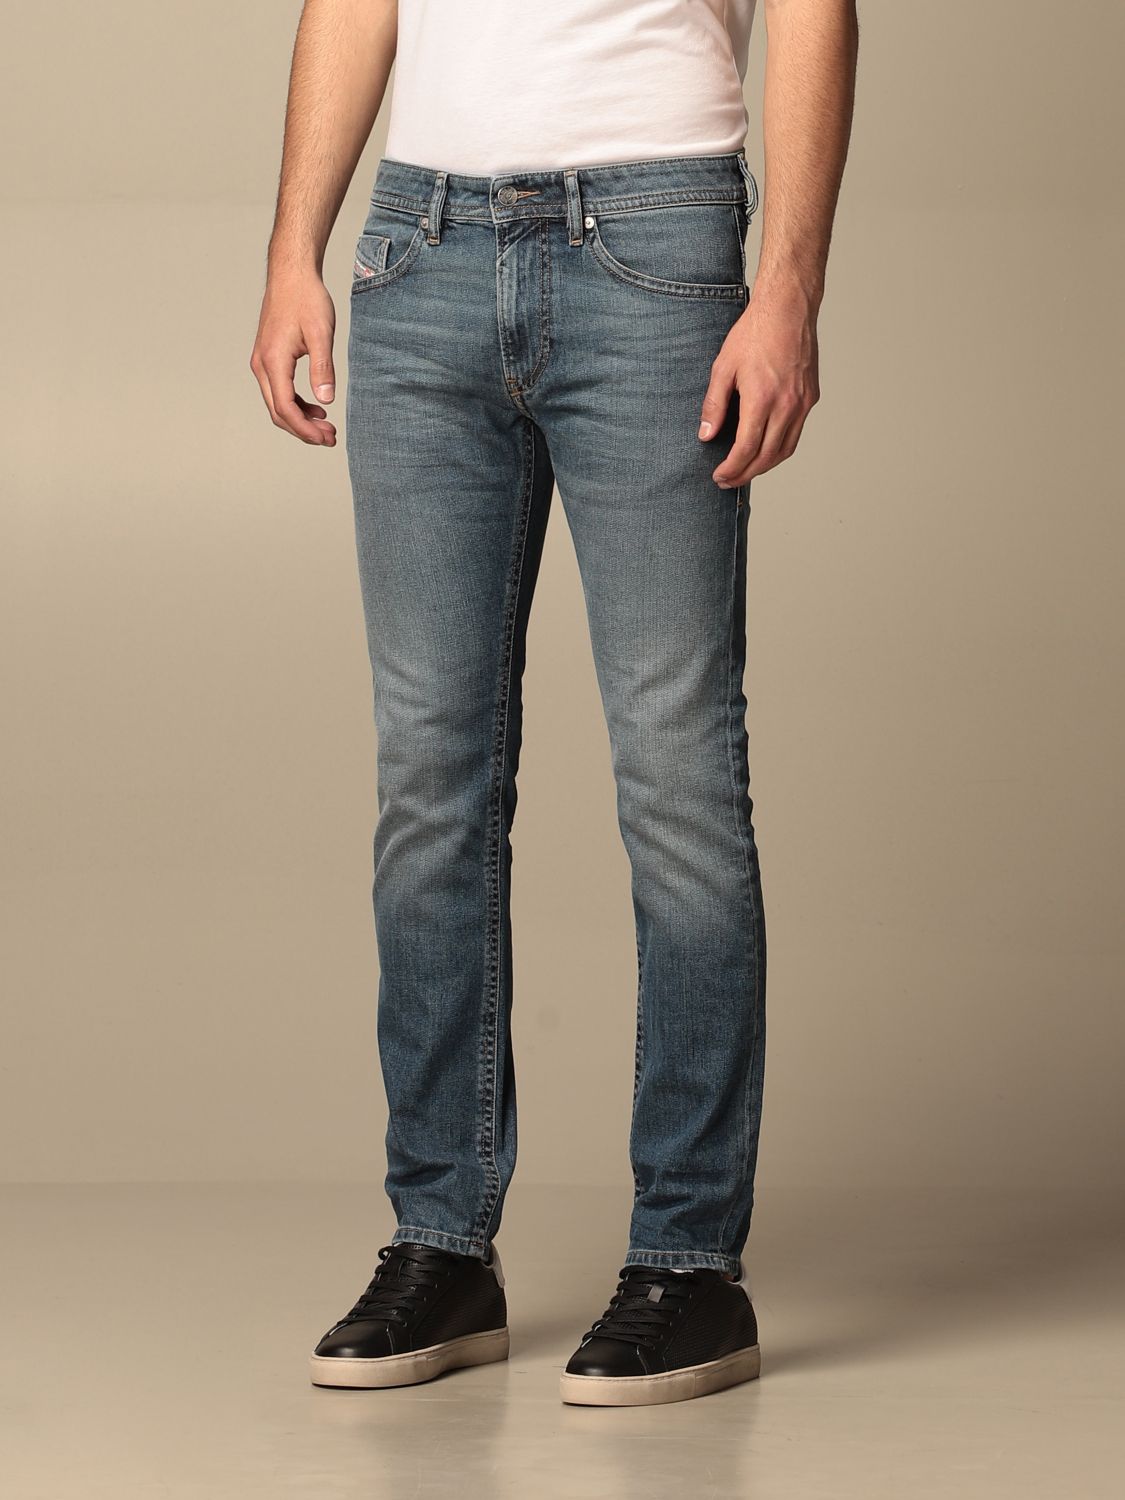 DIESEL: 5-pocket jeans | Jeans Diesel Men Denim | Jeans Diesel 00SB6C ...